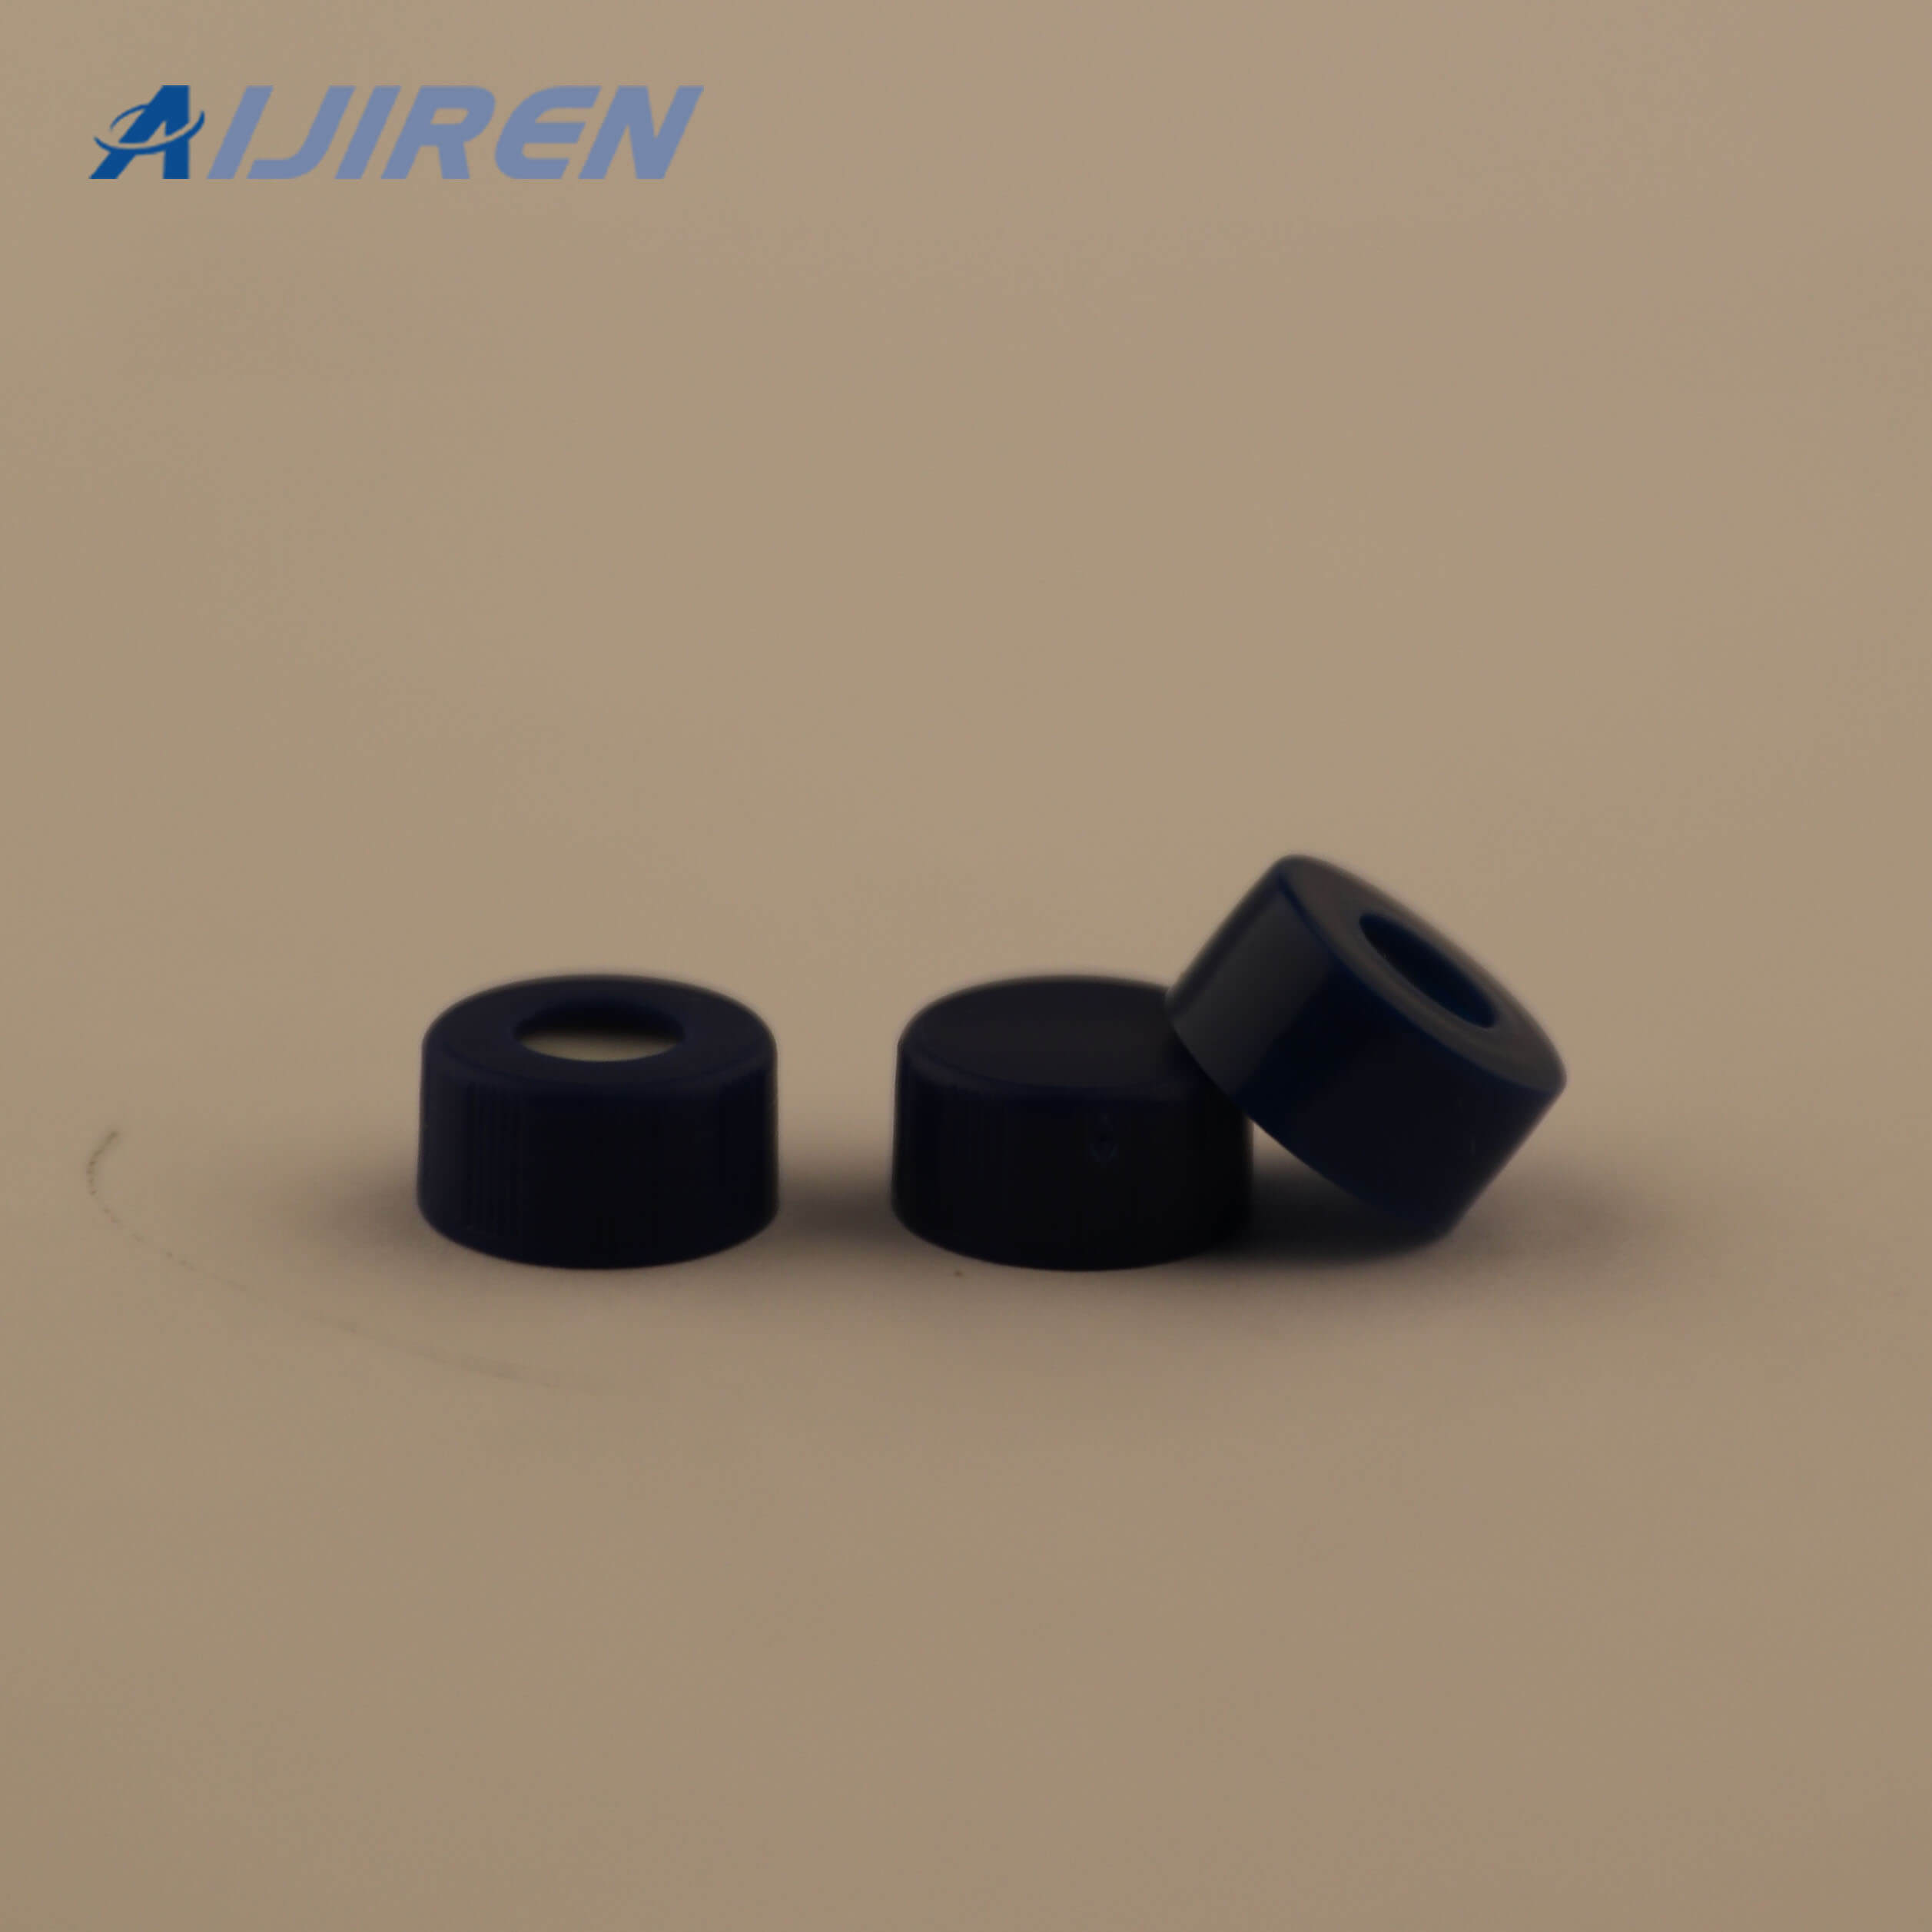 20ml headspace vial9mm Screw Top PP Caps for Aijiren 9mm HPLC Vial